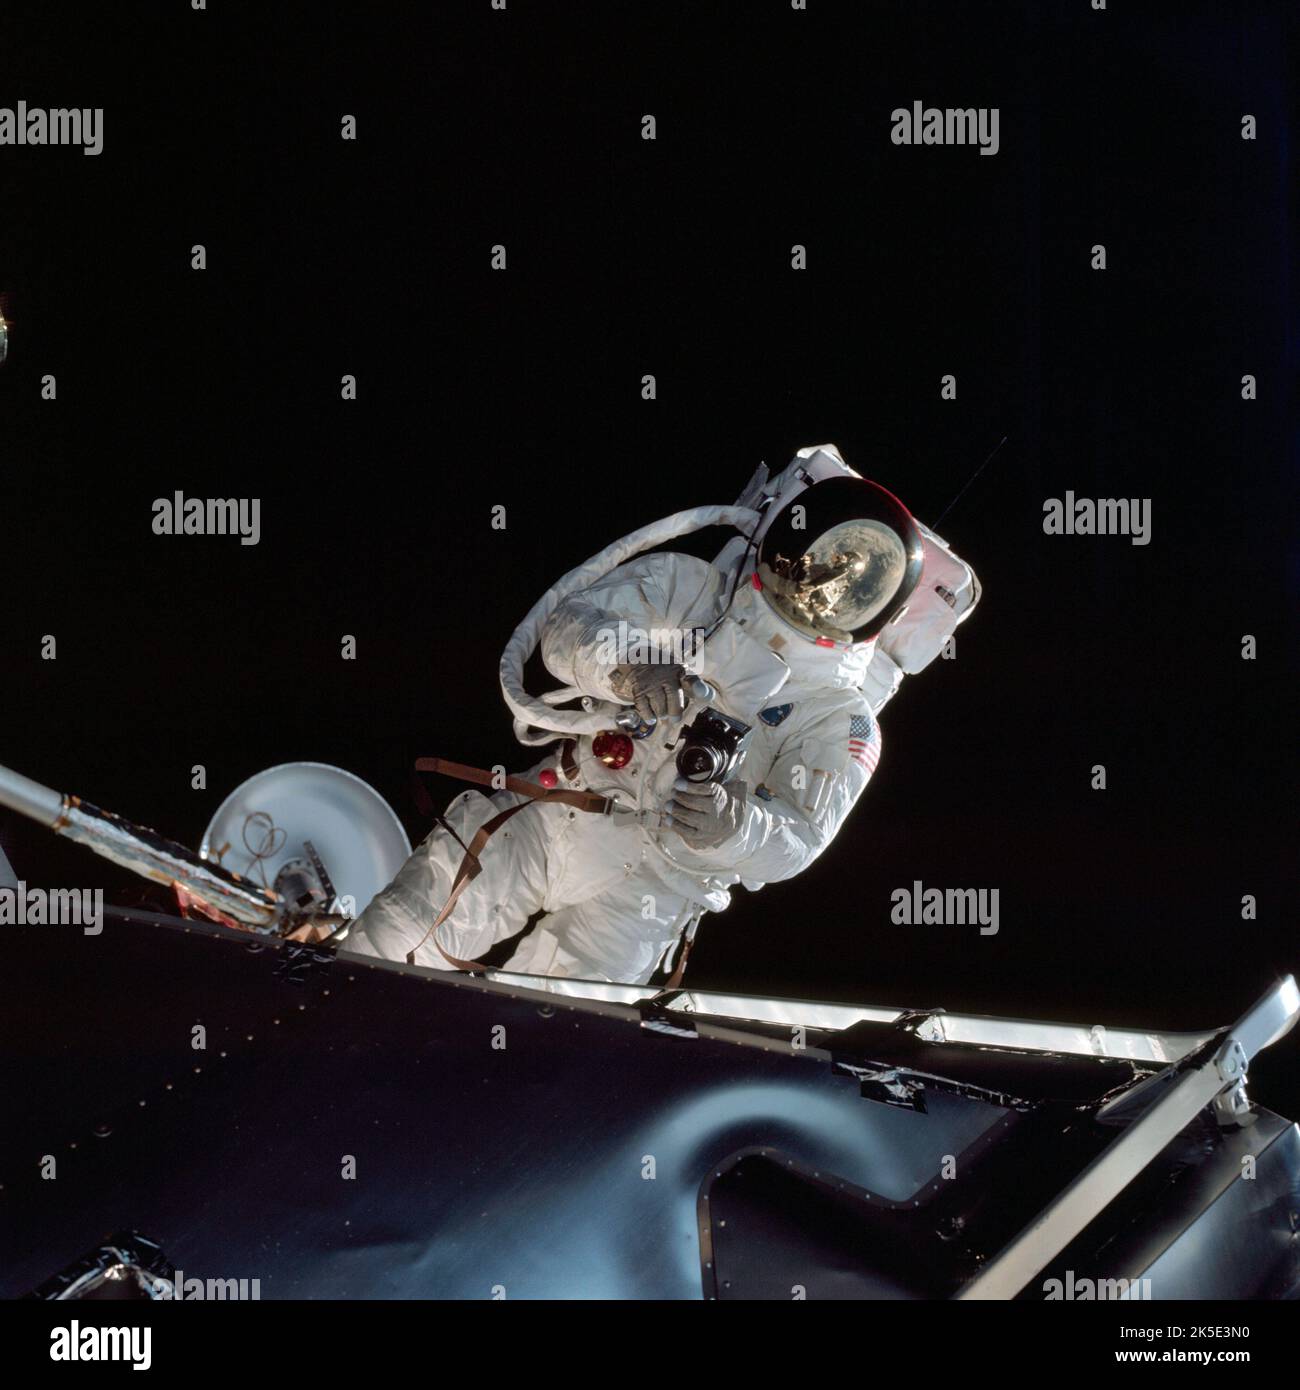 L'astronaute d'Apollo 9 Russell L. Schweickart effectue une sortie spatiale avec une caméra Hasselblad le quatrième jour de la mission orbitale Terre. L'engin spatial Apollo 9, en configuration de mission lunaire, a été testé en orbite terrestre. La mission a été conçue pour répéter toutes les étapes et reproduire tous les événements de la mission Apollo 11 à l'exception du touchdown lunaire, du séjour et du liftoff. Le module de commande et d'entretien et le module Lunar ont été utilisés dans des procédures de vol identiques à celles qui emportaient plus tard des véhicules similaires à la lune. Une image optimisée de la NASA : Credit: NASA Banque D'Images